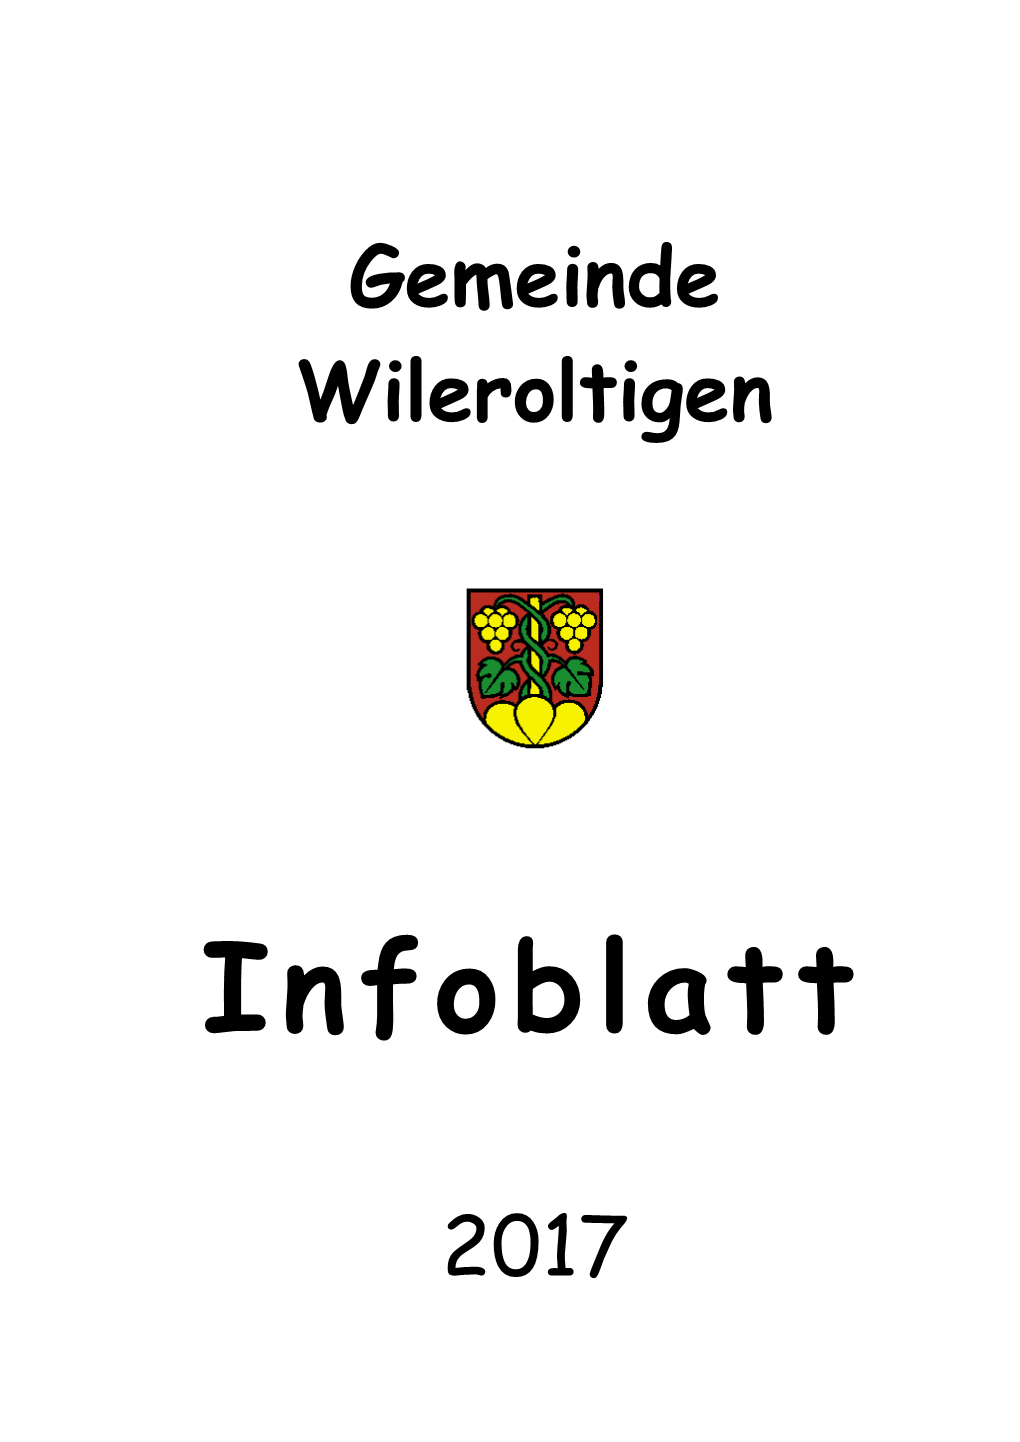 Gemeinde Wileroltigen 2017